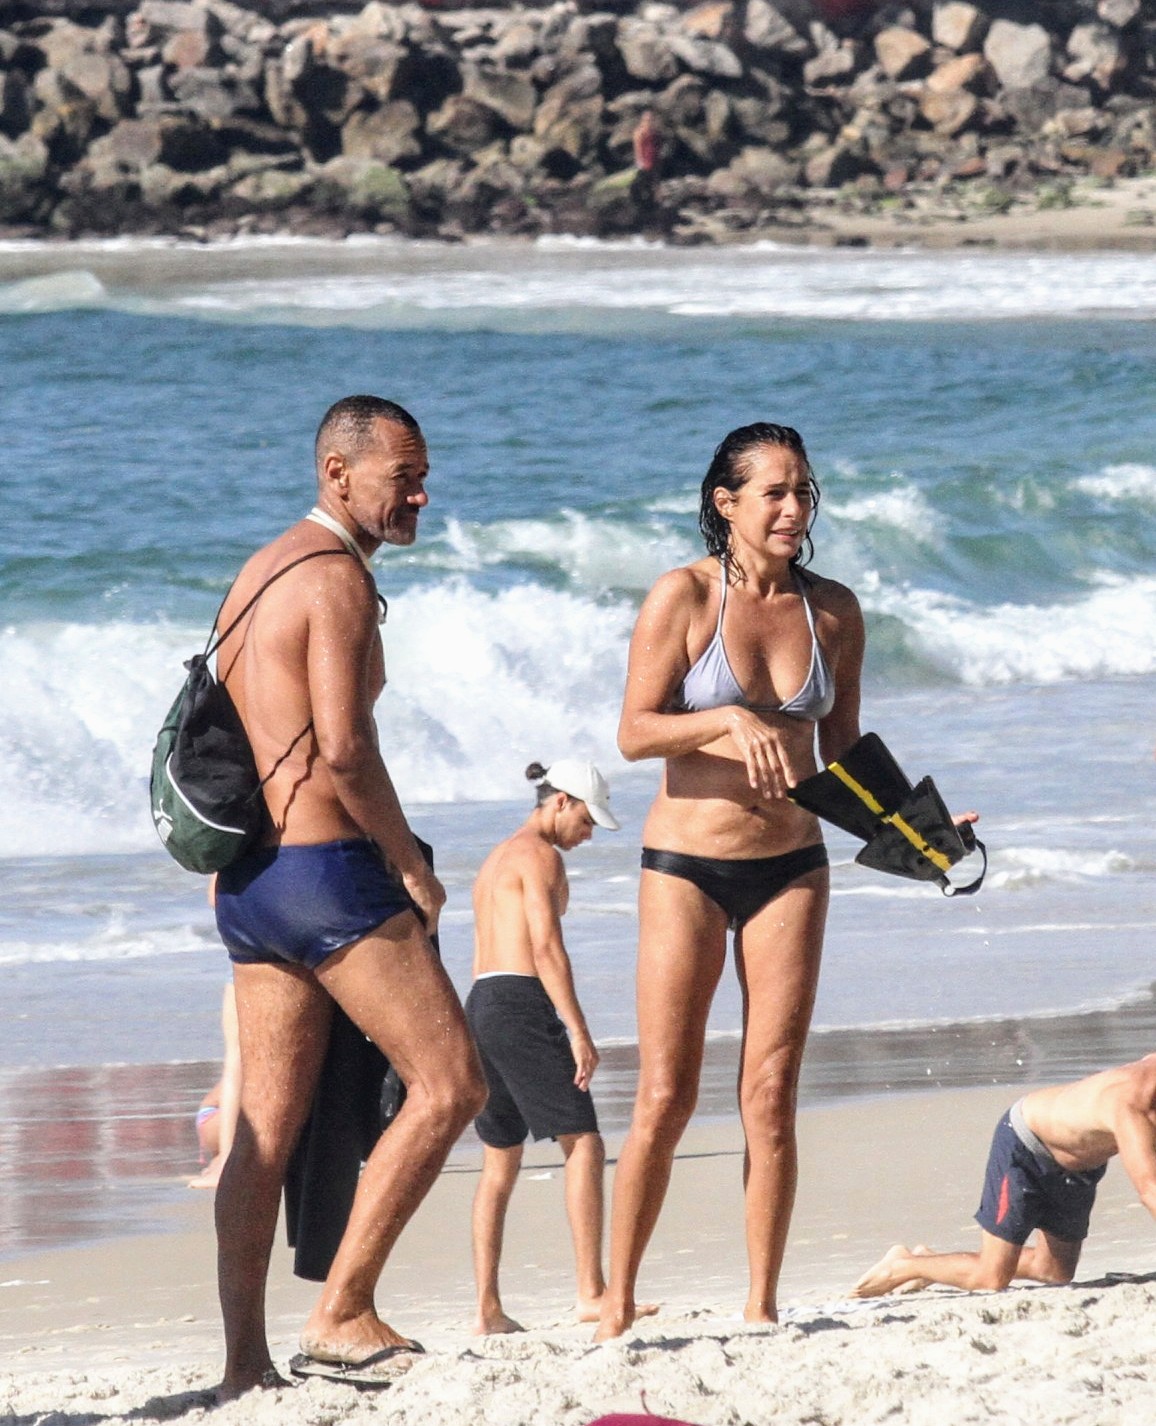 Andréa Beltrão em uma praia no Rio de Janeiro